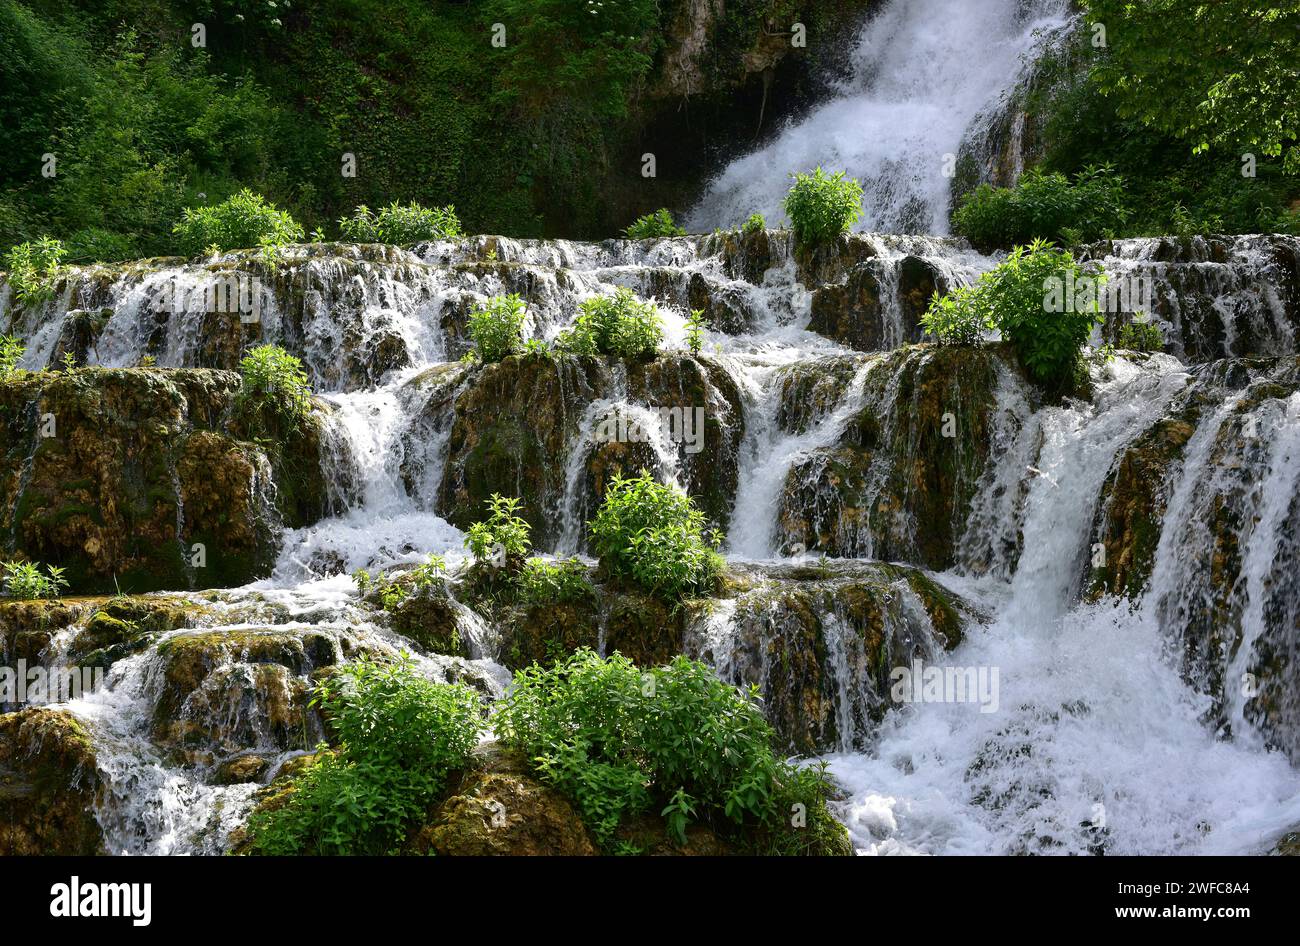 Orbaneja del Castillo, waterfall. Burgos province, Castilla y Leon, Spain. Stock Photo